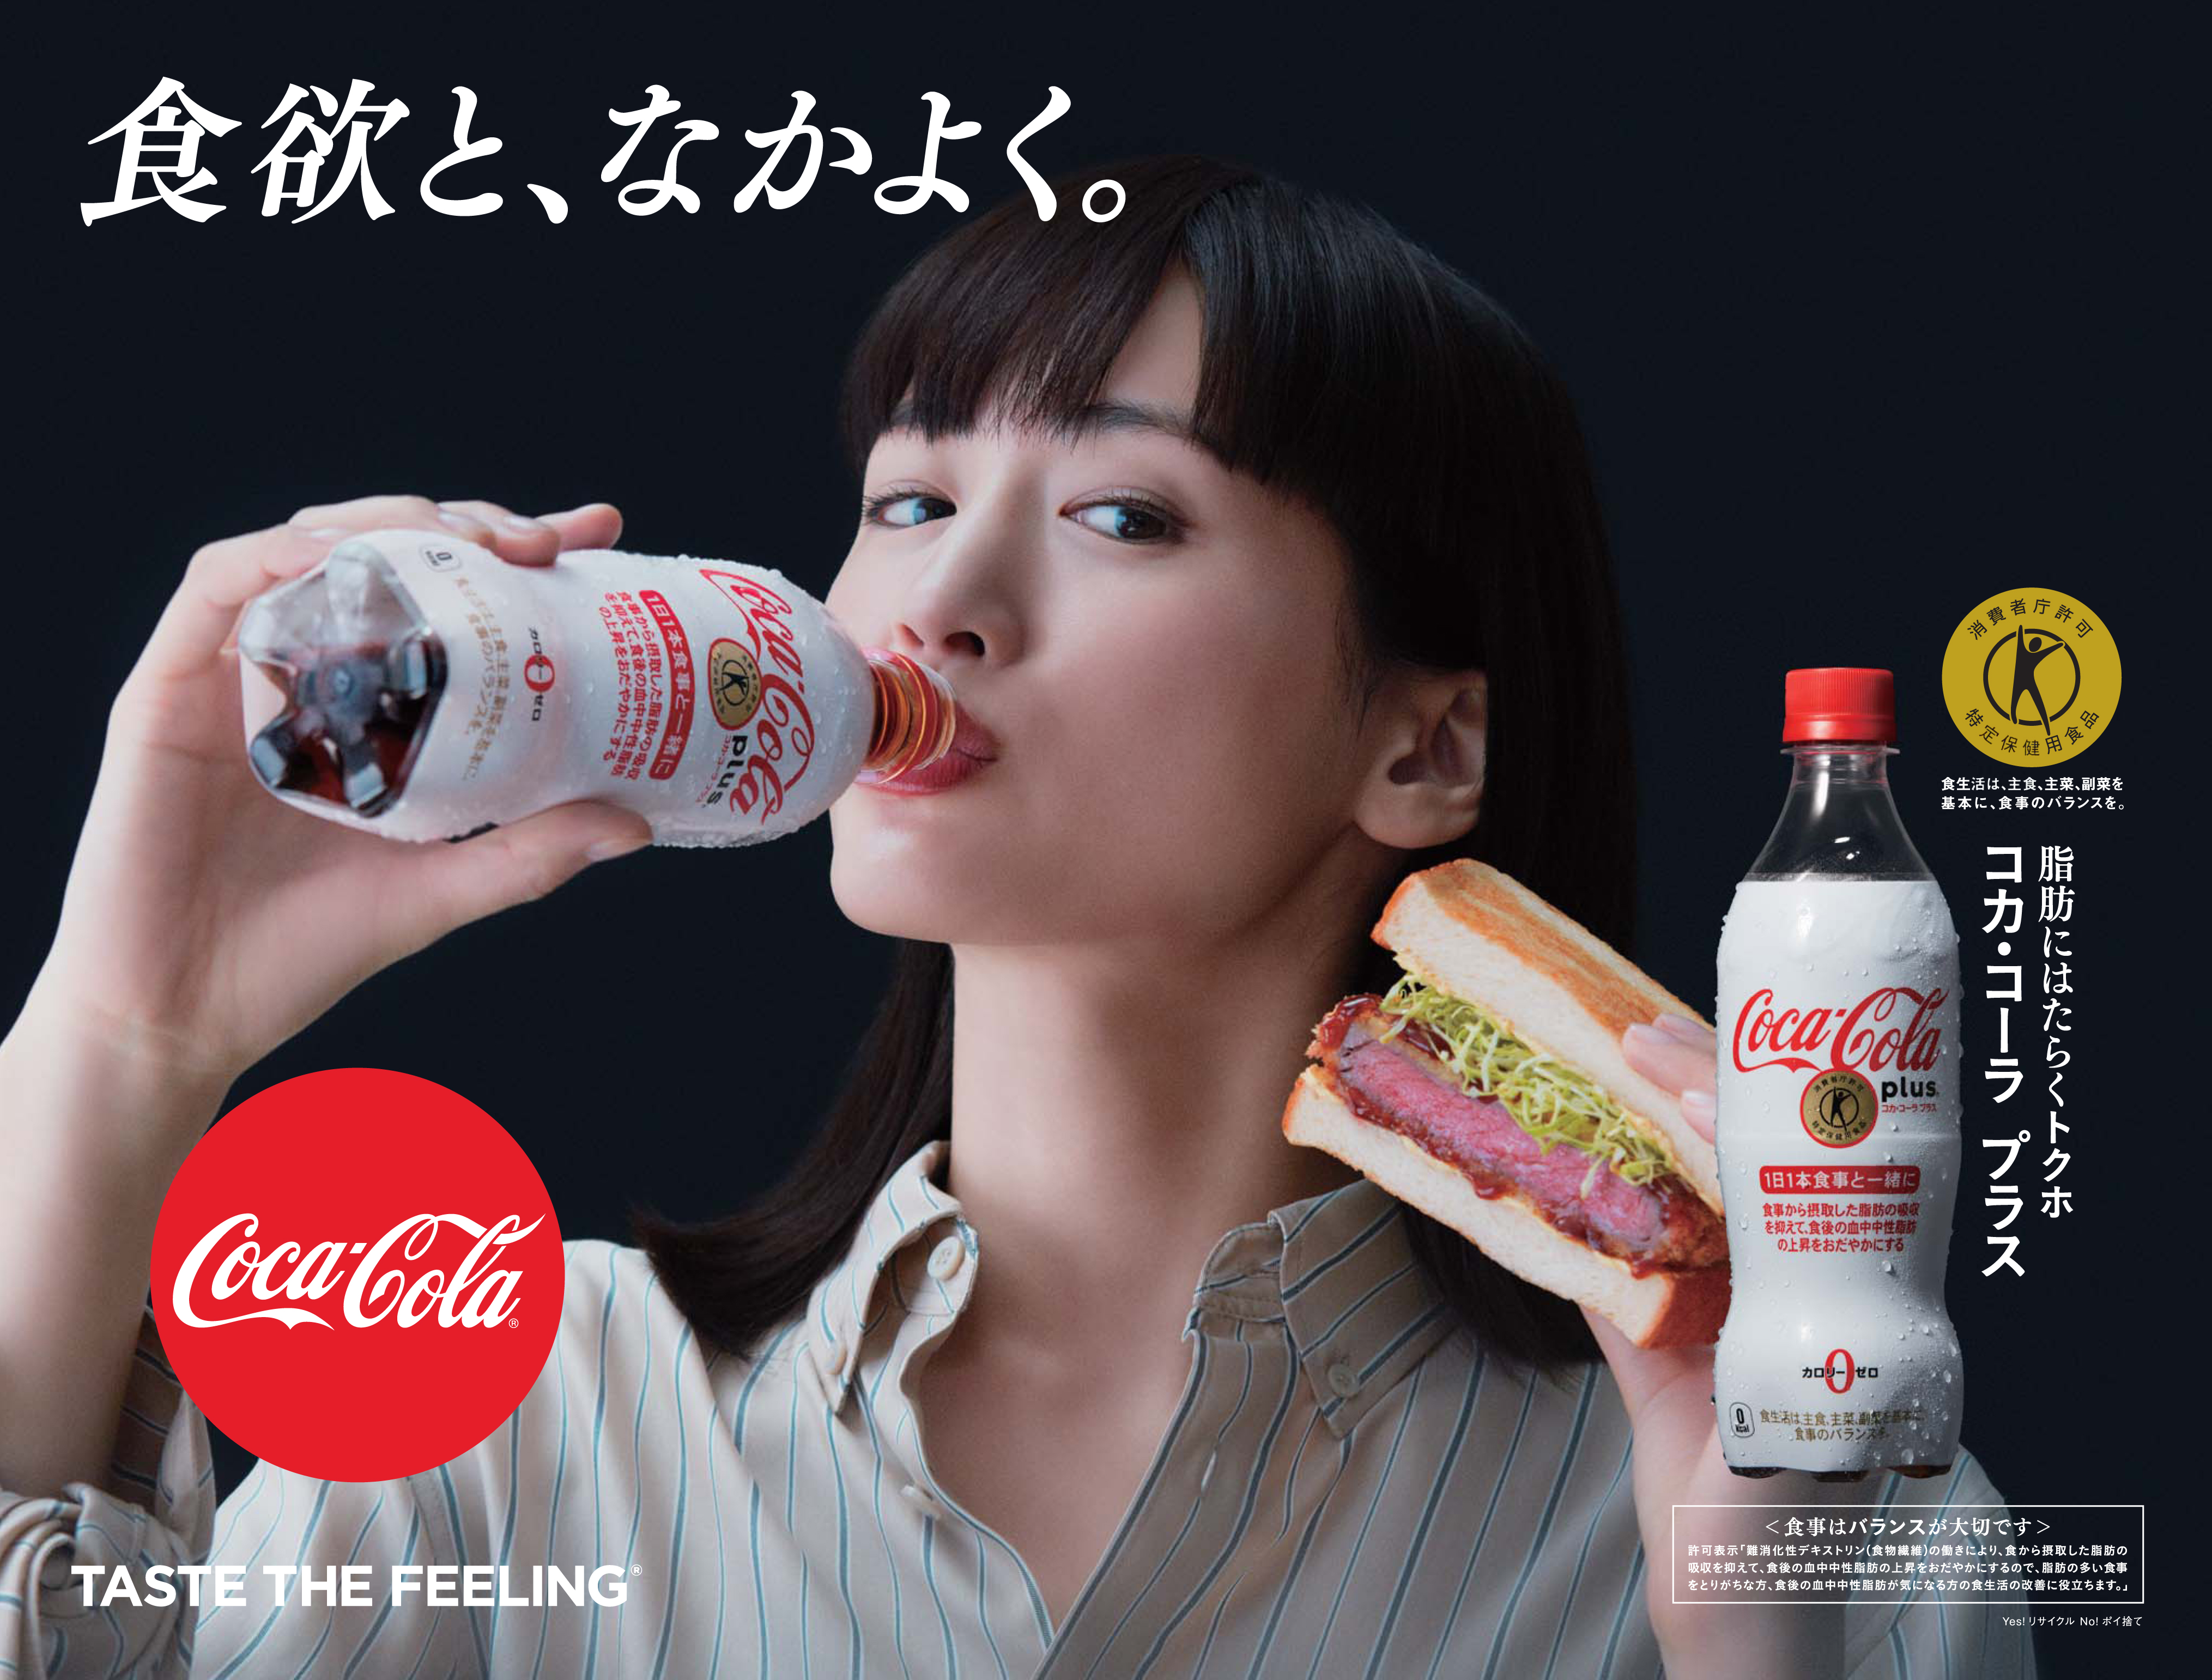 1月28日 月 から コカ コーラ プラス 新キャンペーン開始 おいしく食事しながら 脂肪にはたらくトクホ のコーク 日本コカ コーラ株式会社のプレスリリース